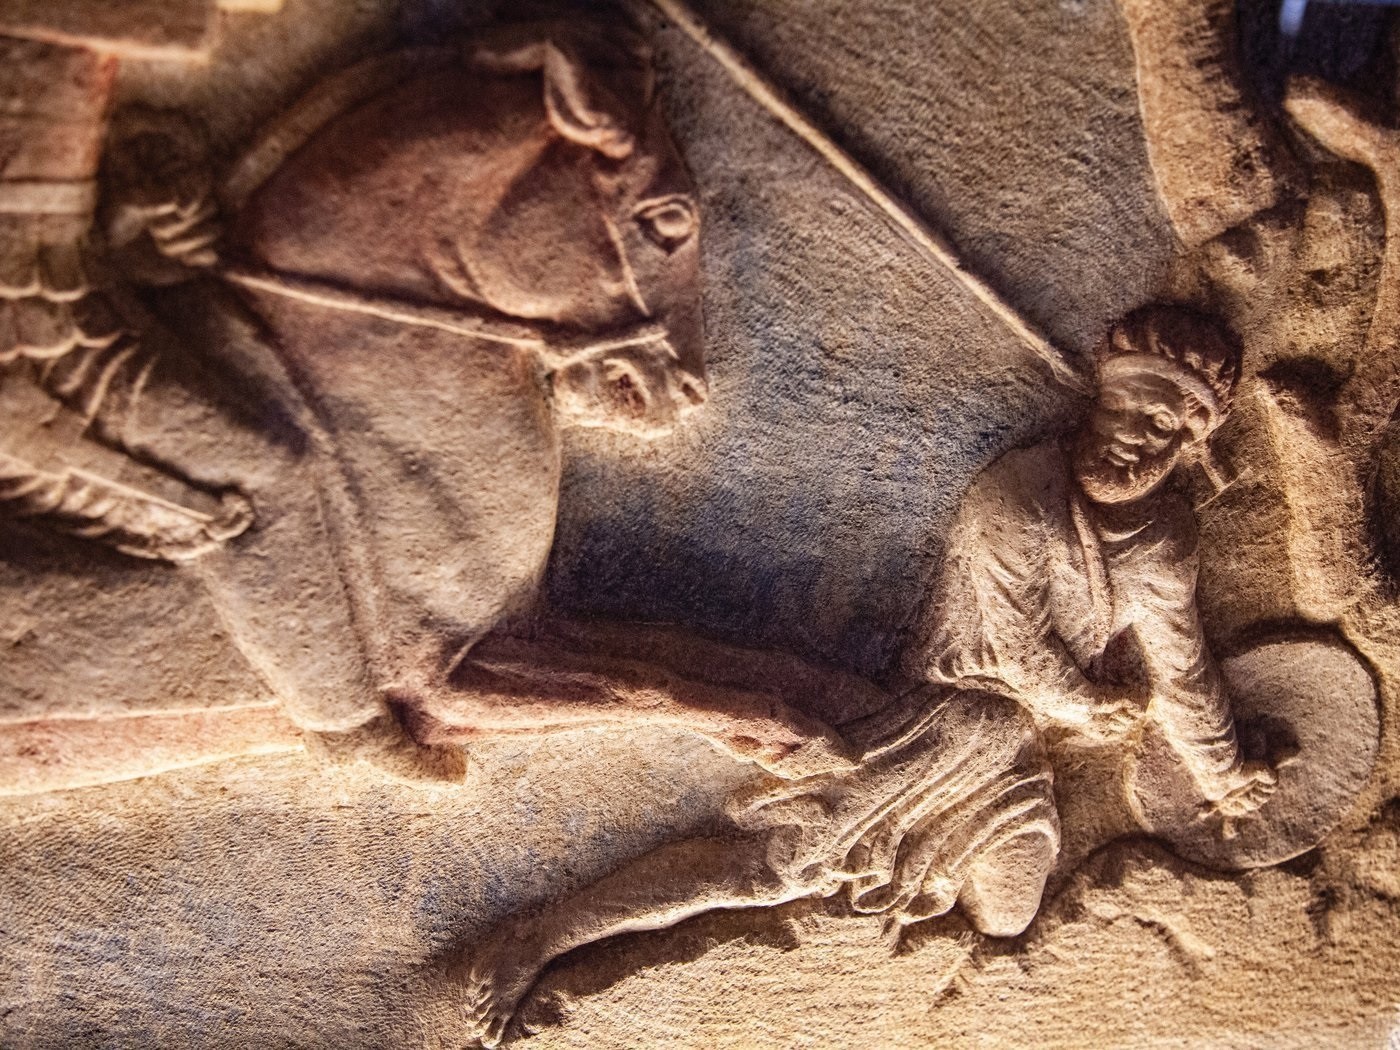 Λεπτομέρεια σαρκοφάγο του 4ου π.Χ. αιώνα, που πιστεύεται ότι απεικονίζει μια σκηνή μάχης Περσών και Ελλήνων. Βρέθηκε κοντά στην Τροία